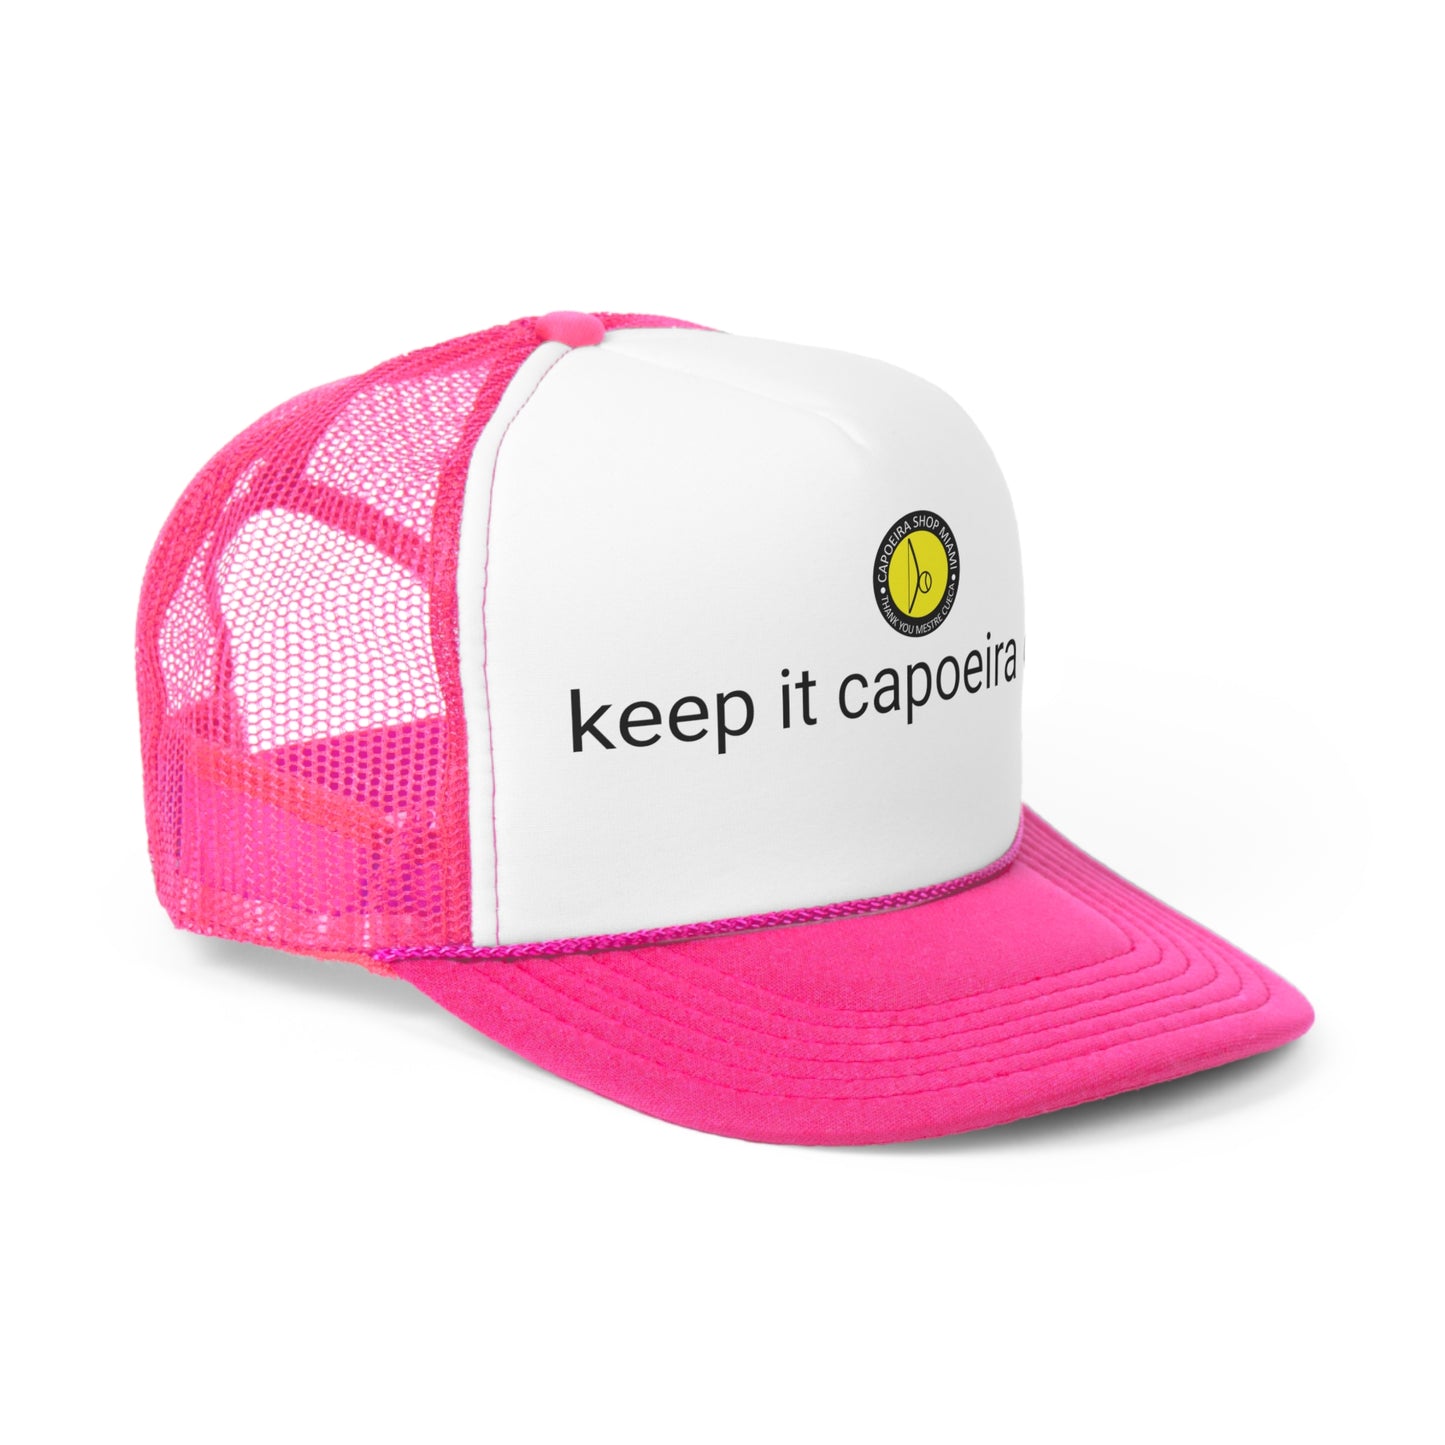 Capoeira Customized Trucker Cap